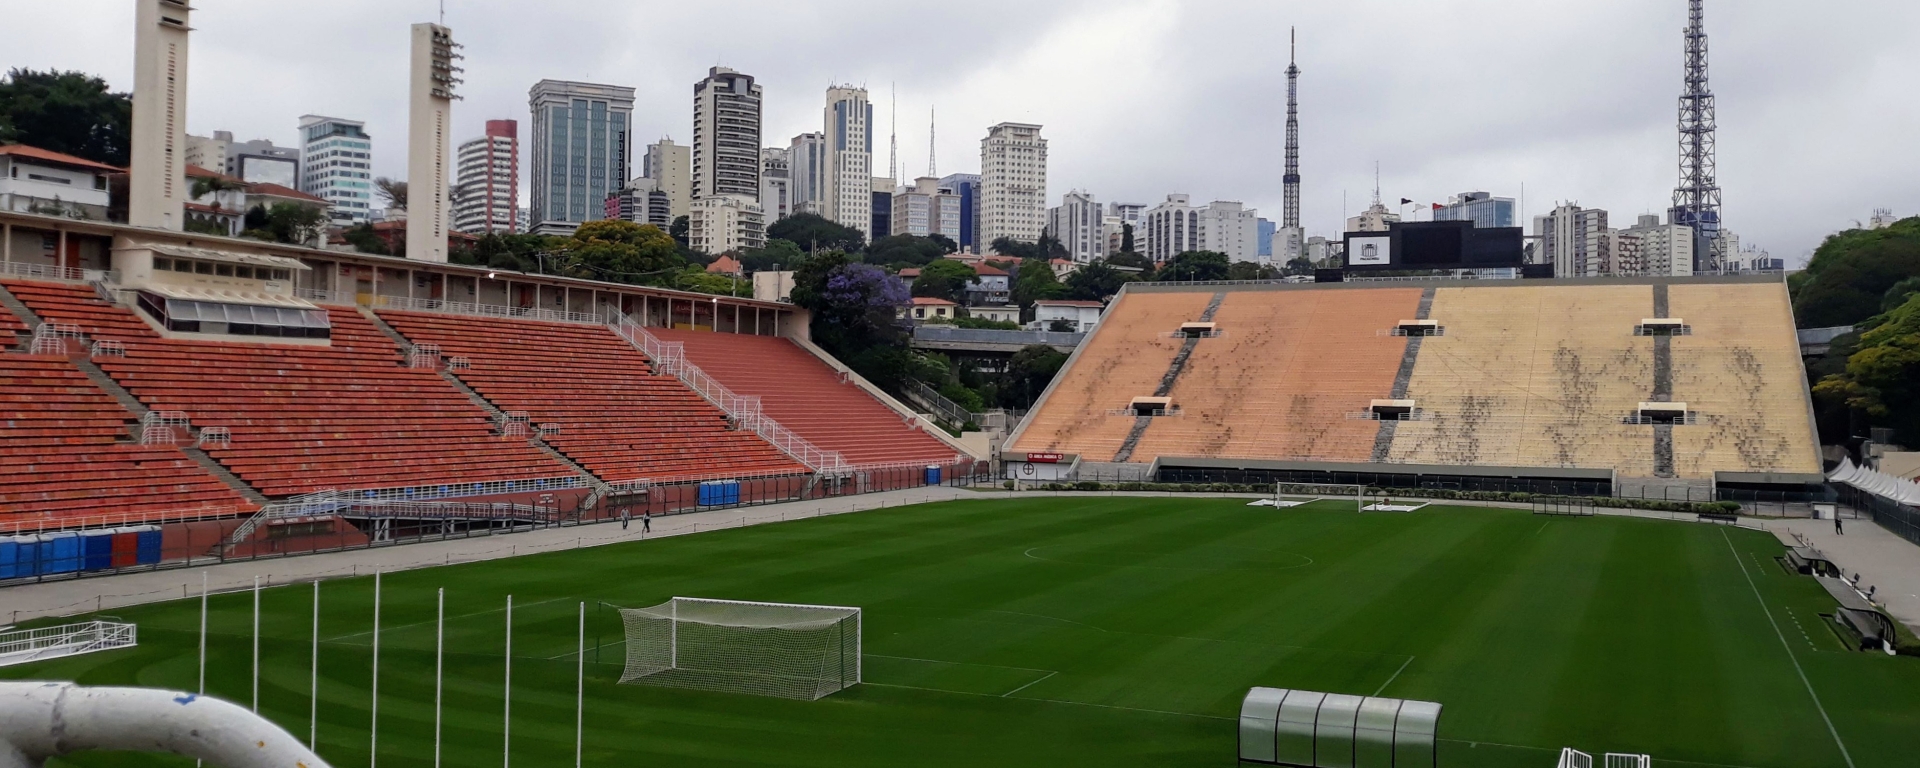 Museu do Futebol - Estádio do Pacaembu - SP